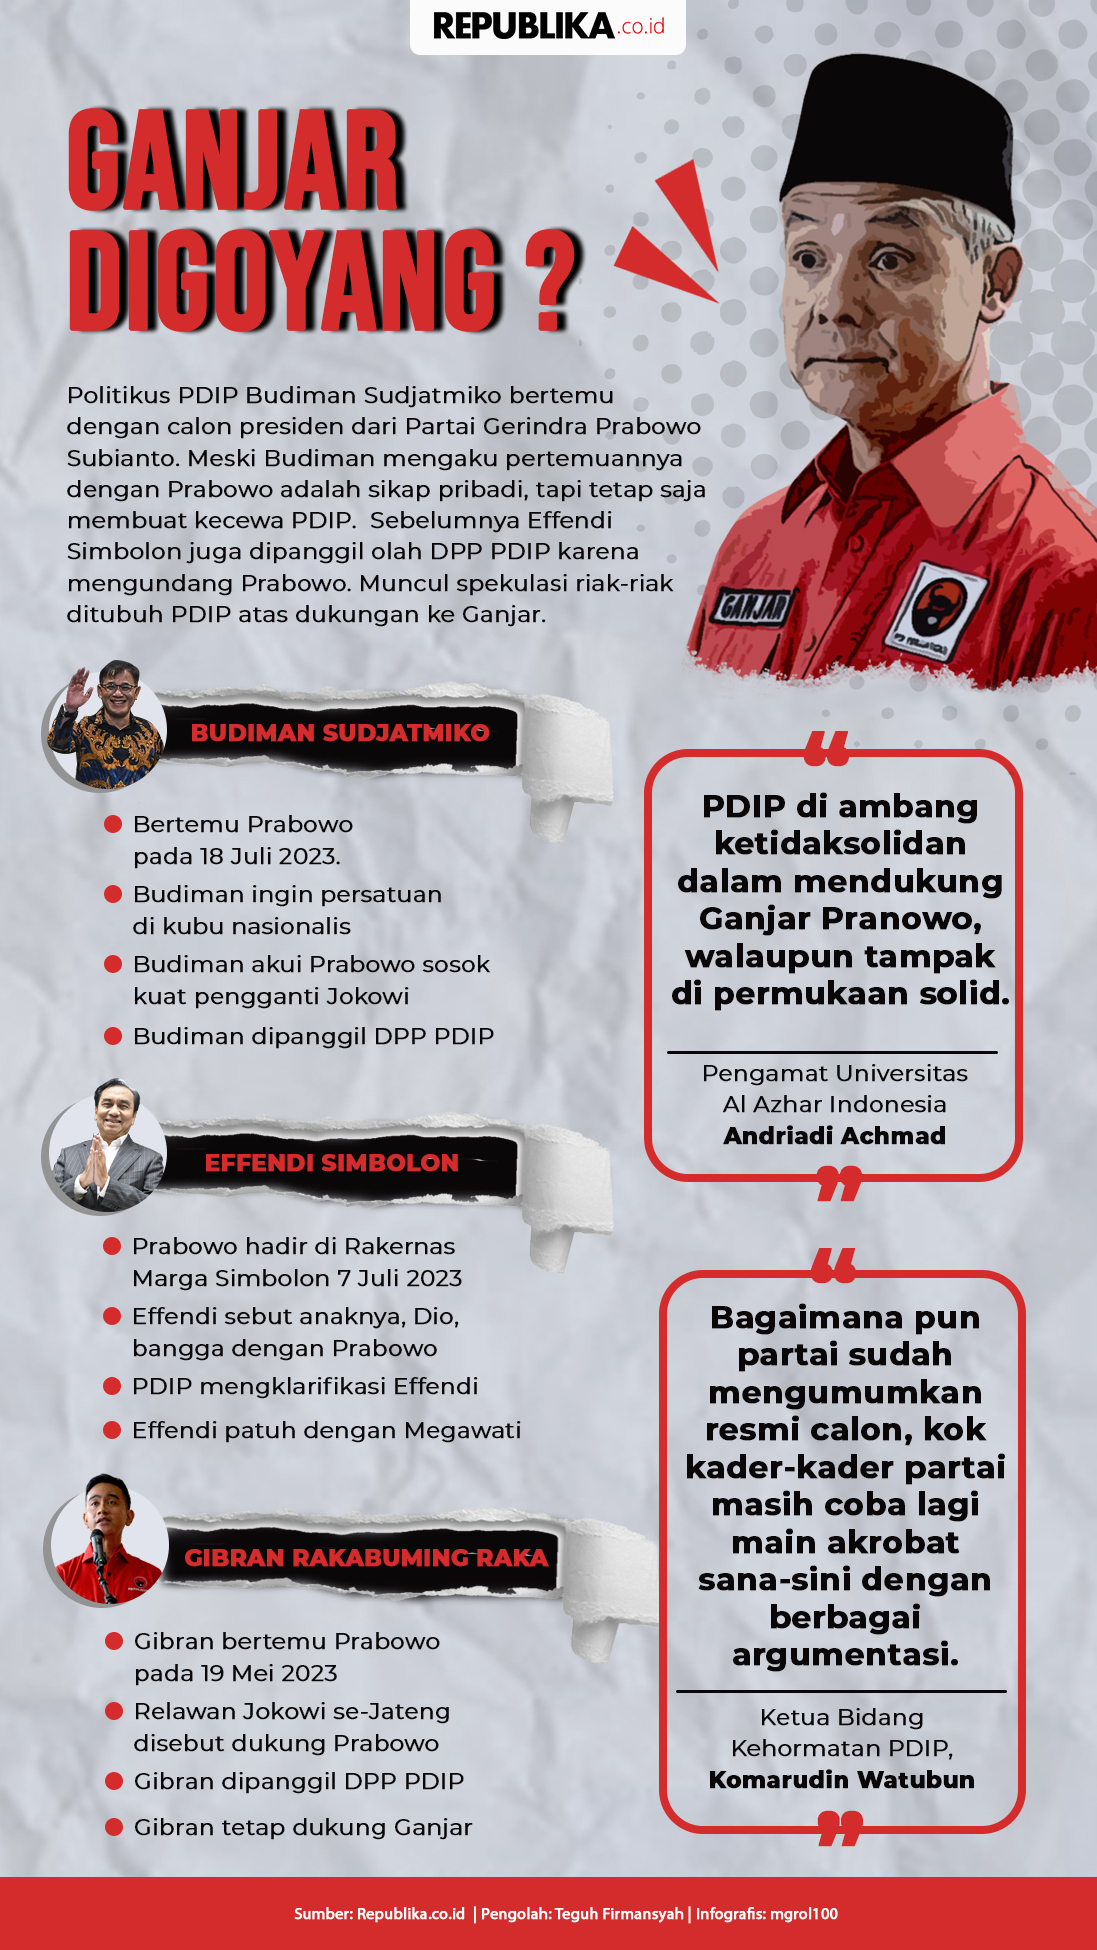 Mengapa PDIP Jadi Terkesan Ragu Memecat Budiman Sudjatmiko?